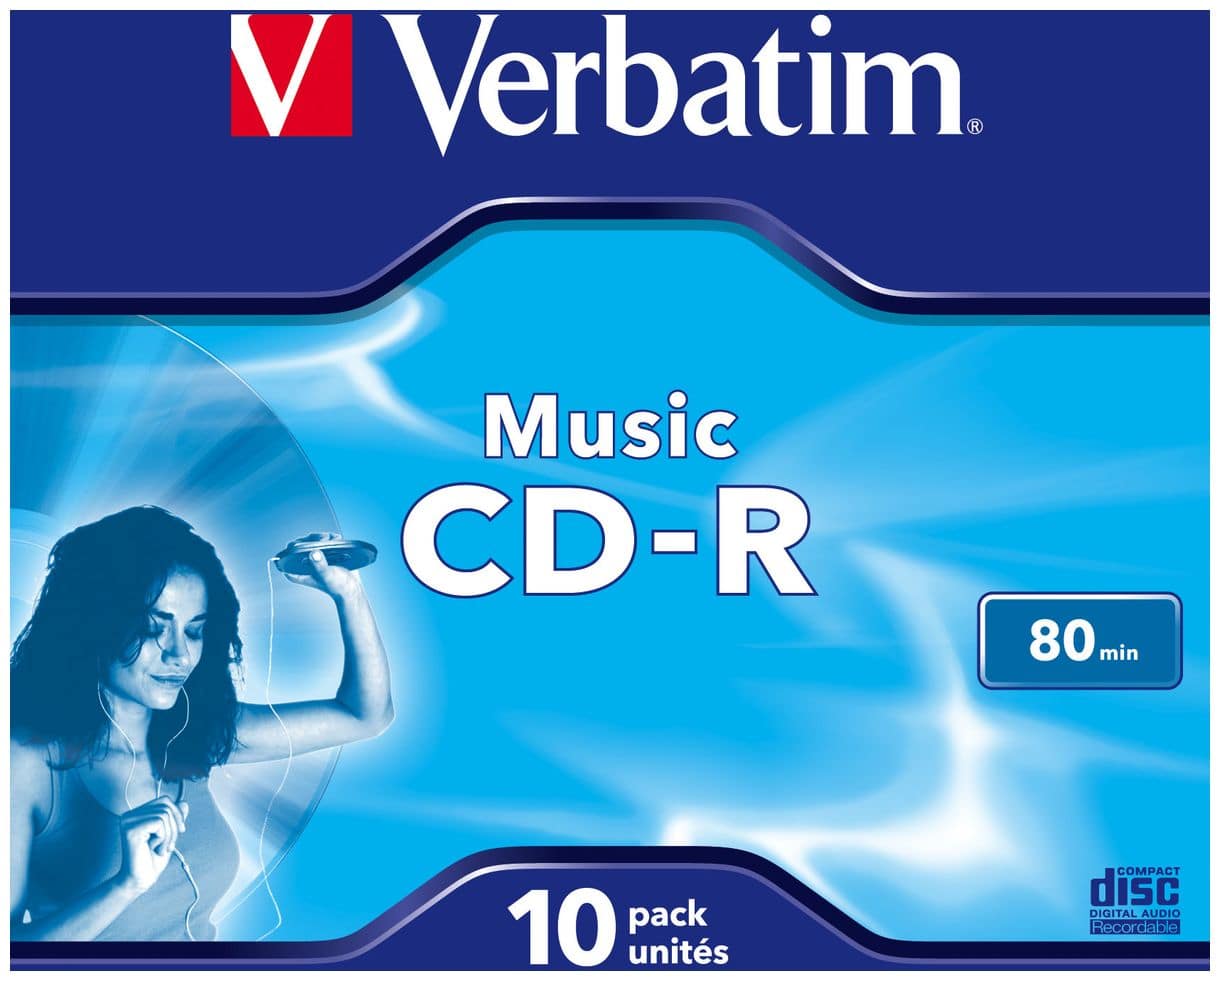 Music CD-R 